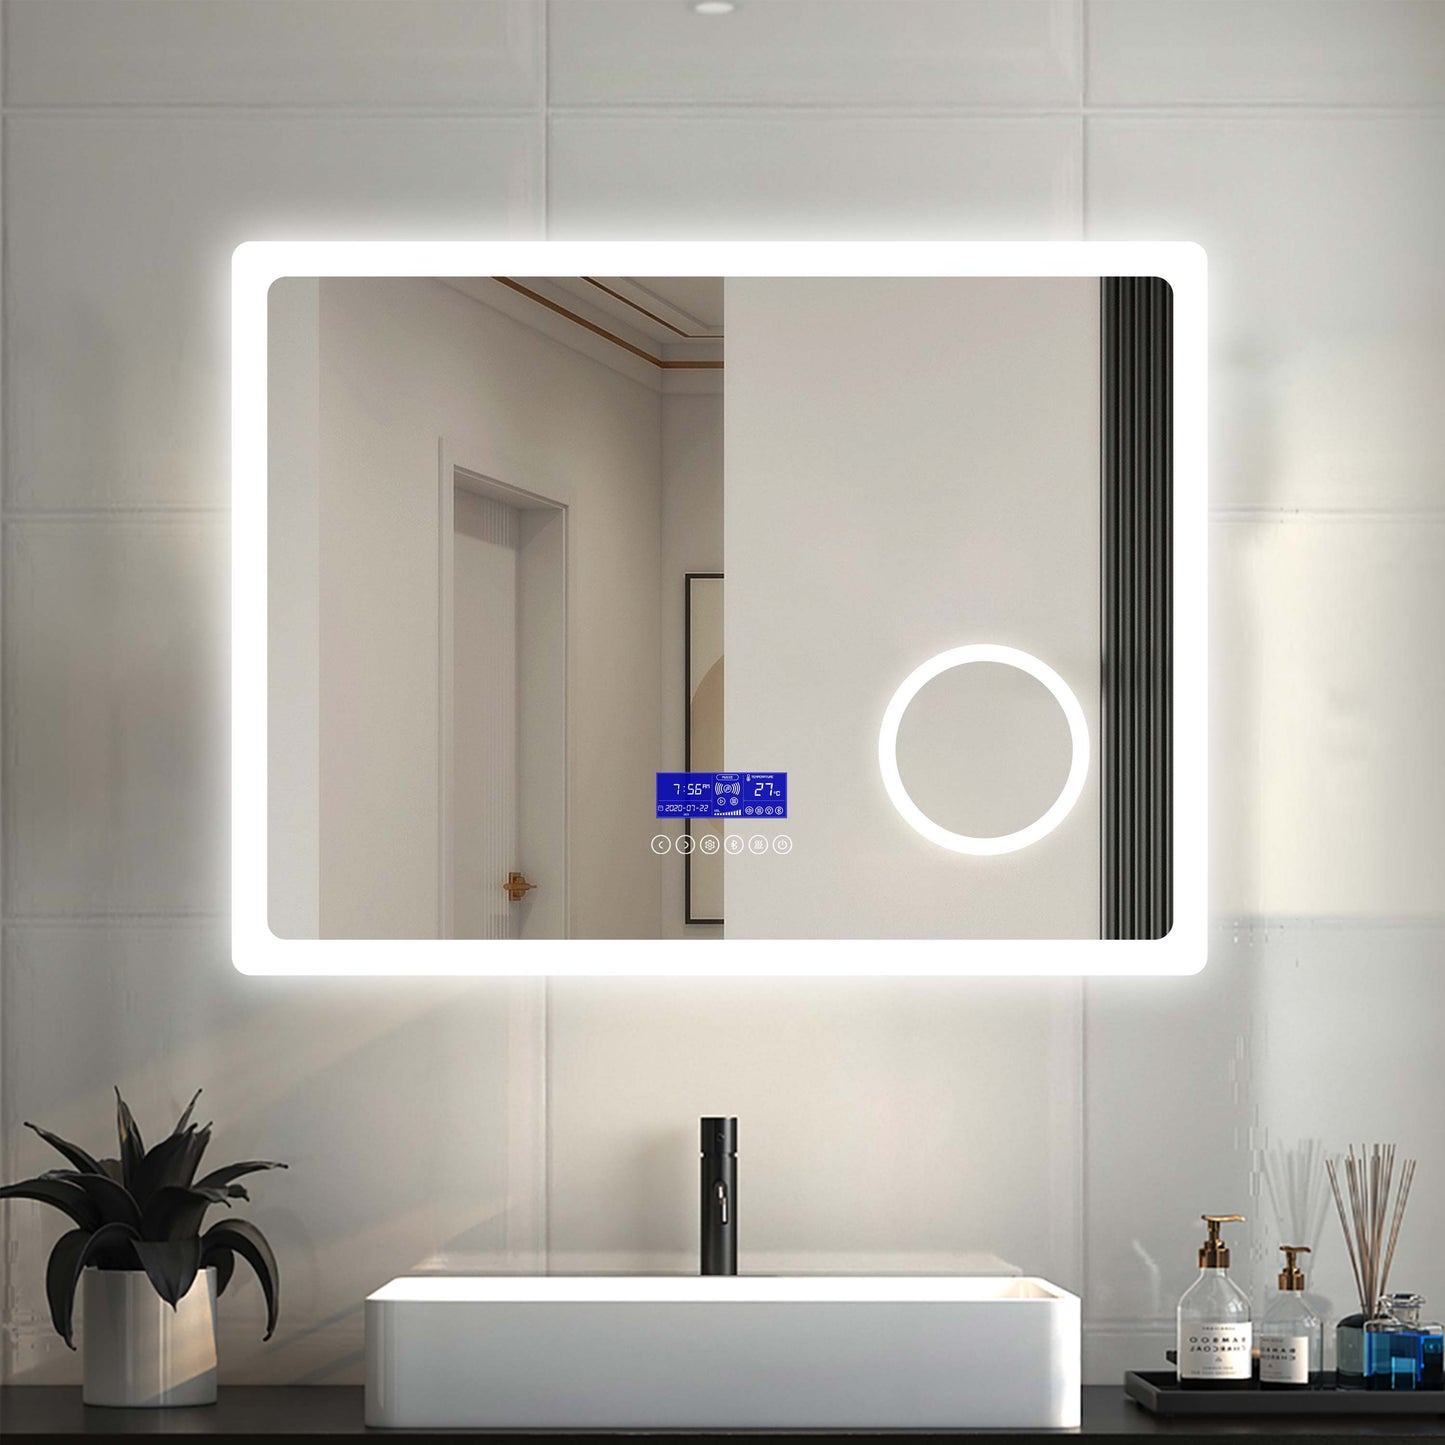 Espejo de Baño con Iluminación Luz LED Luces Varias(Blanco/Neutro/Amarillo) y Ajustación. Espejo de Baño LED con Lupax3. Espejo Led Antivaho con Control Táctil en Pantalla